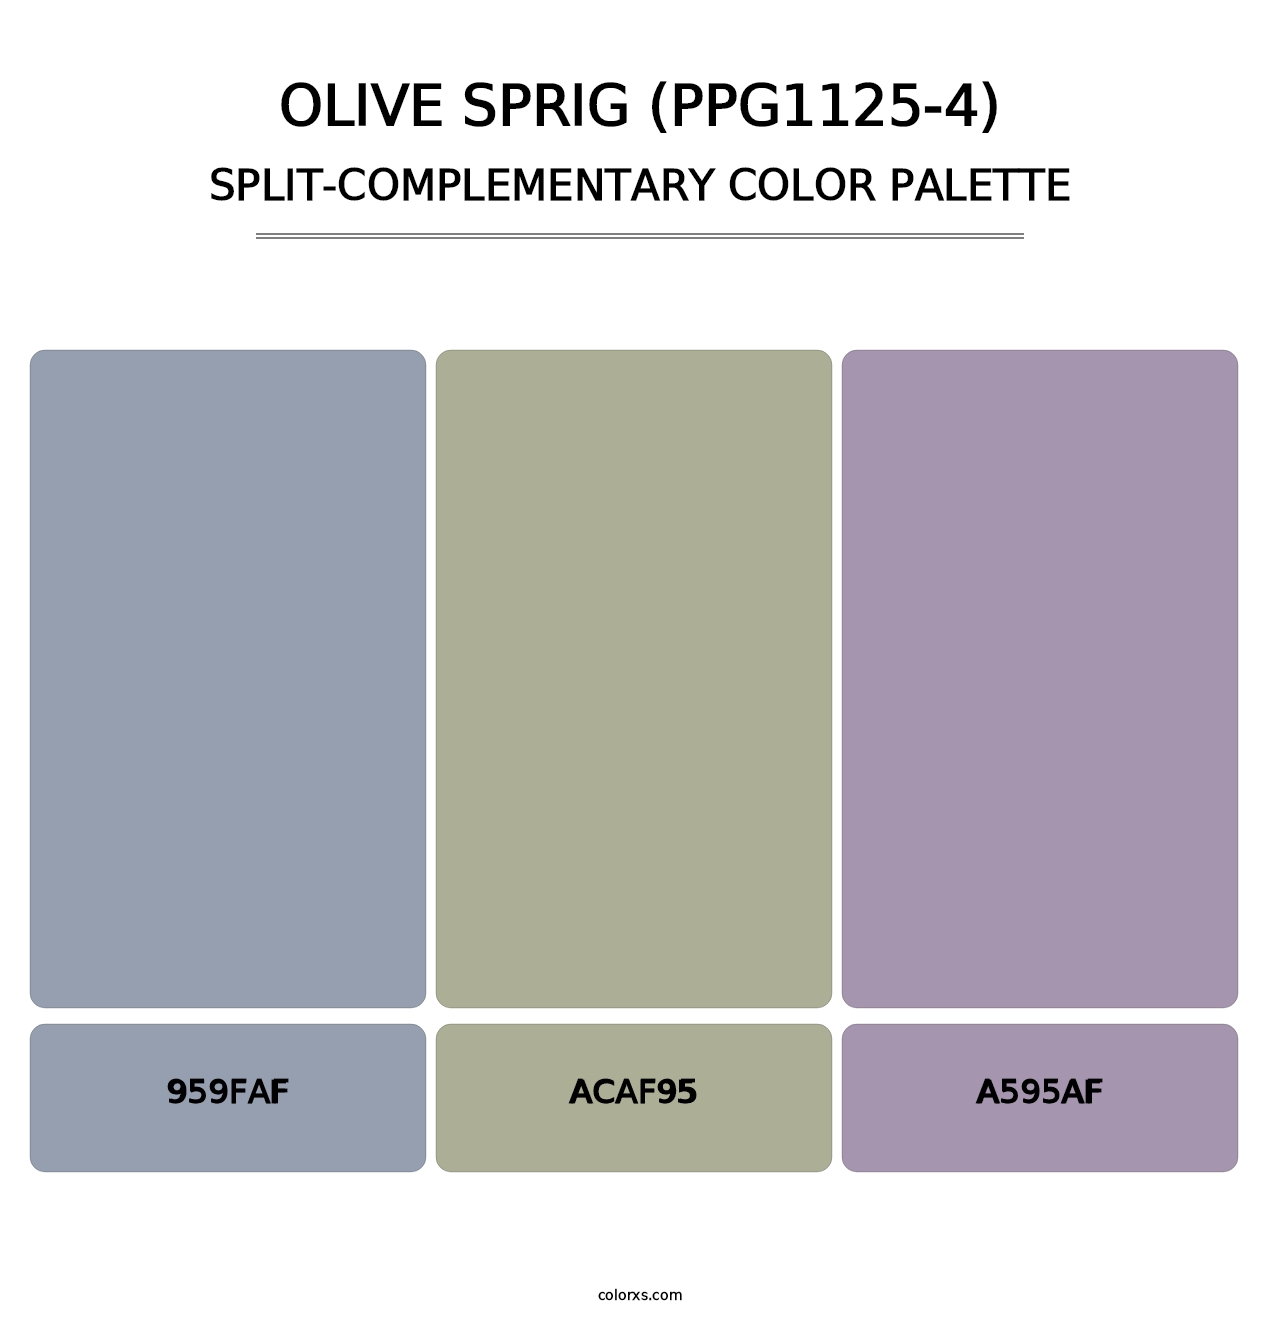 Olive Sprig (PPG1125-4) - Split-Complementary Color Palette